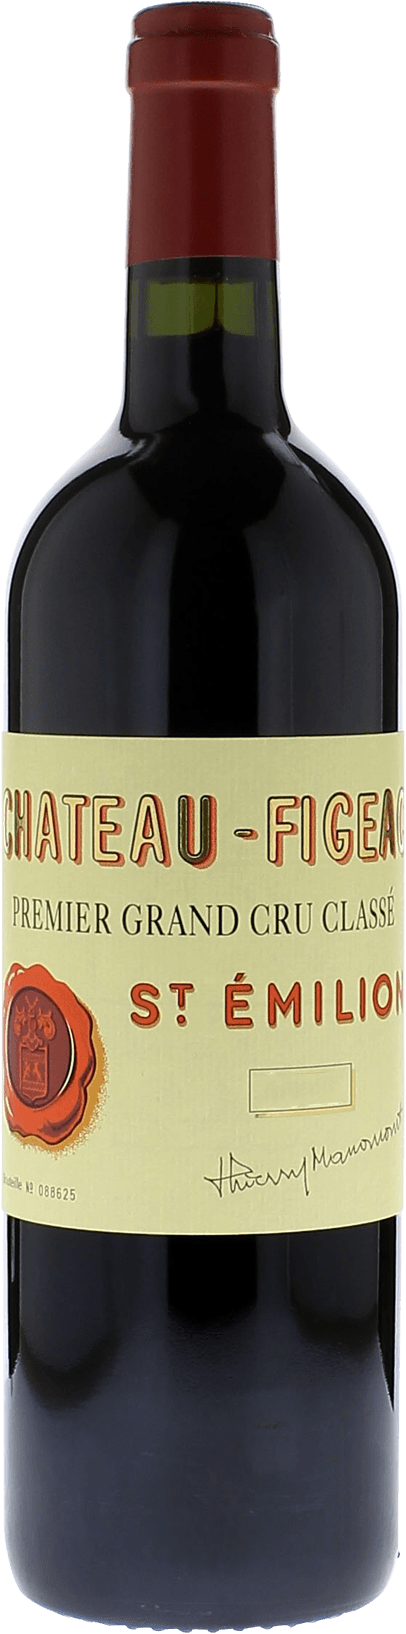 Figeac 2019 1er Grand cru class Saint-Emilion, Bordeaux rouge